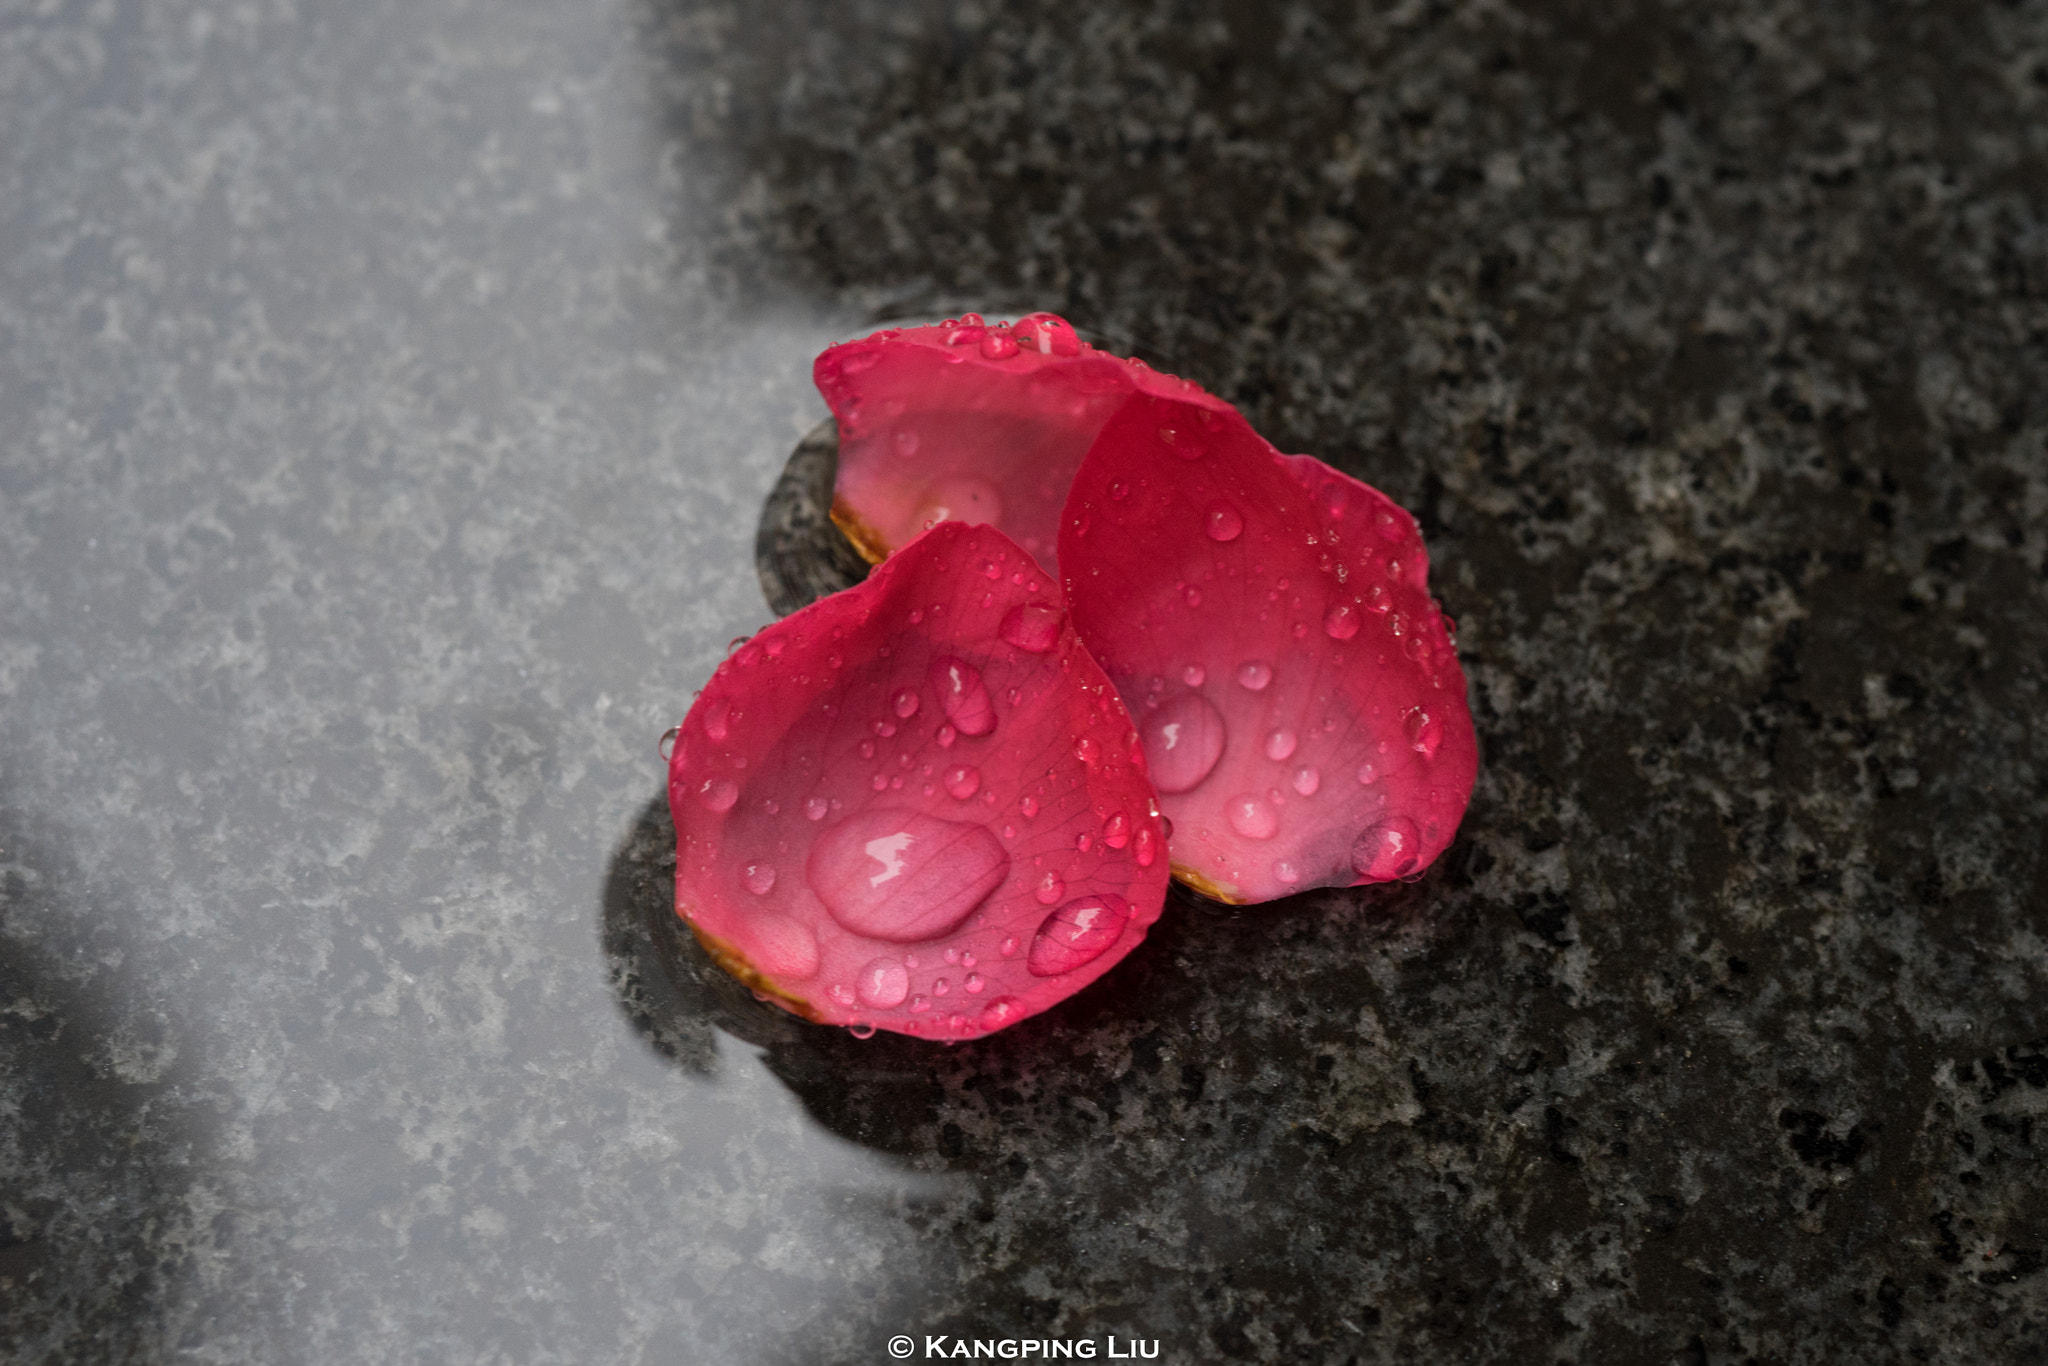 Sony a7 + Sony FE 50mm F2.8 Macro sample photo. Fallen flower in rain photography